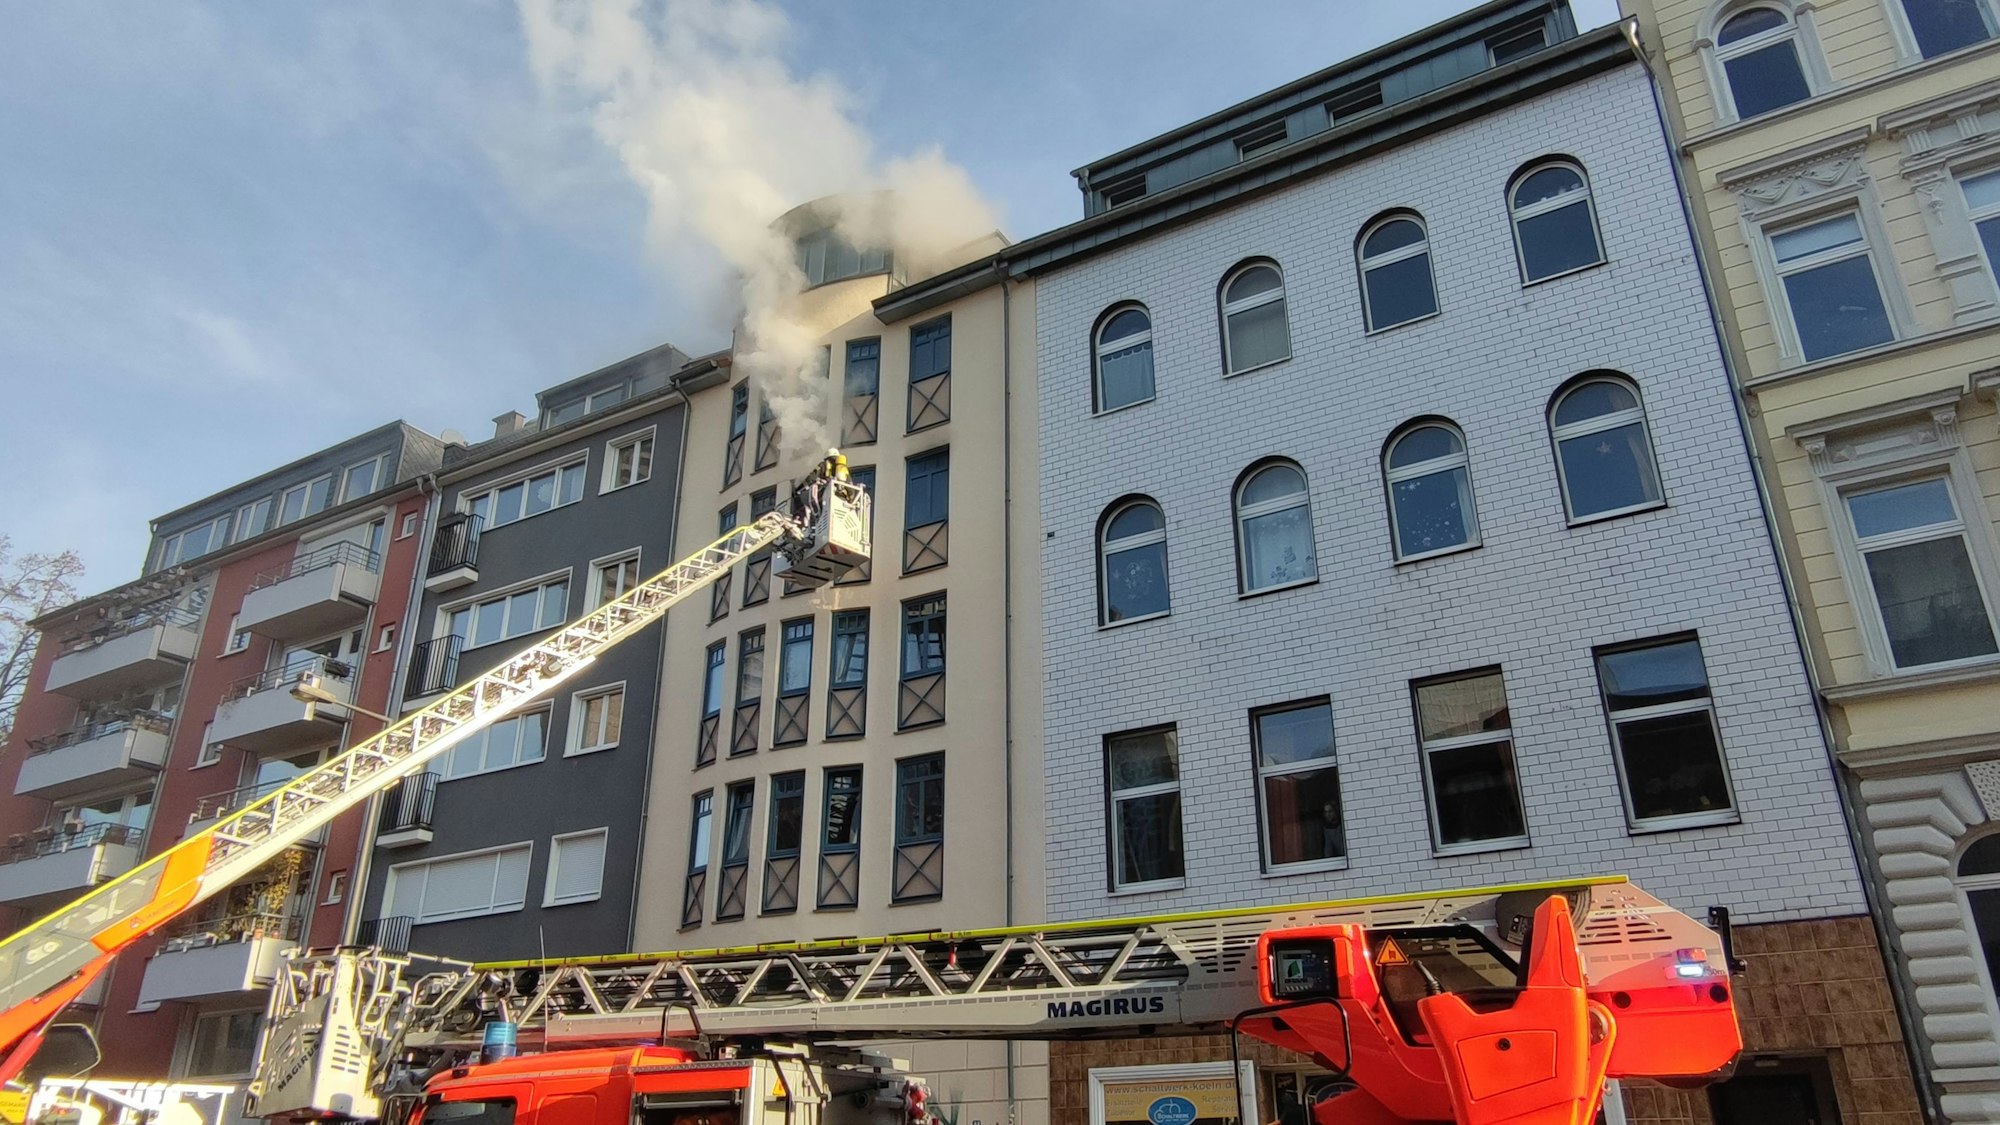 Häuserfront in der Kölner Innenstadt. Aus einer Wohnung kommen dicke Rauchschwaden.